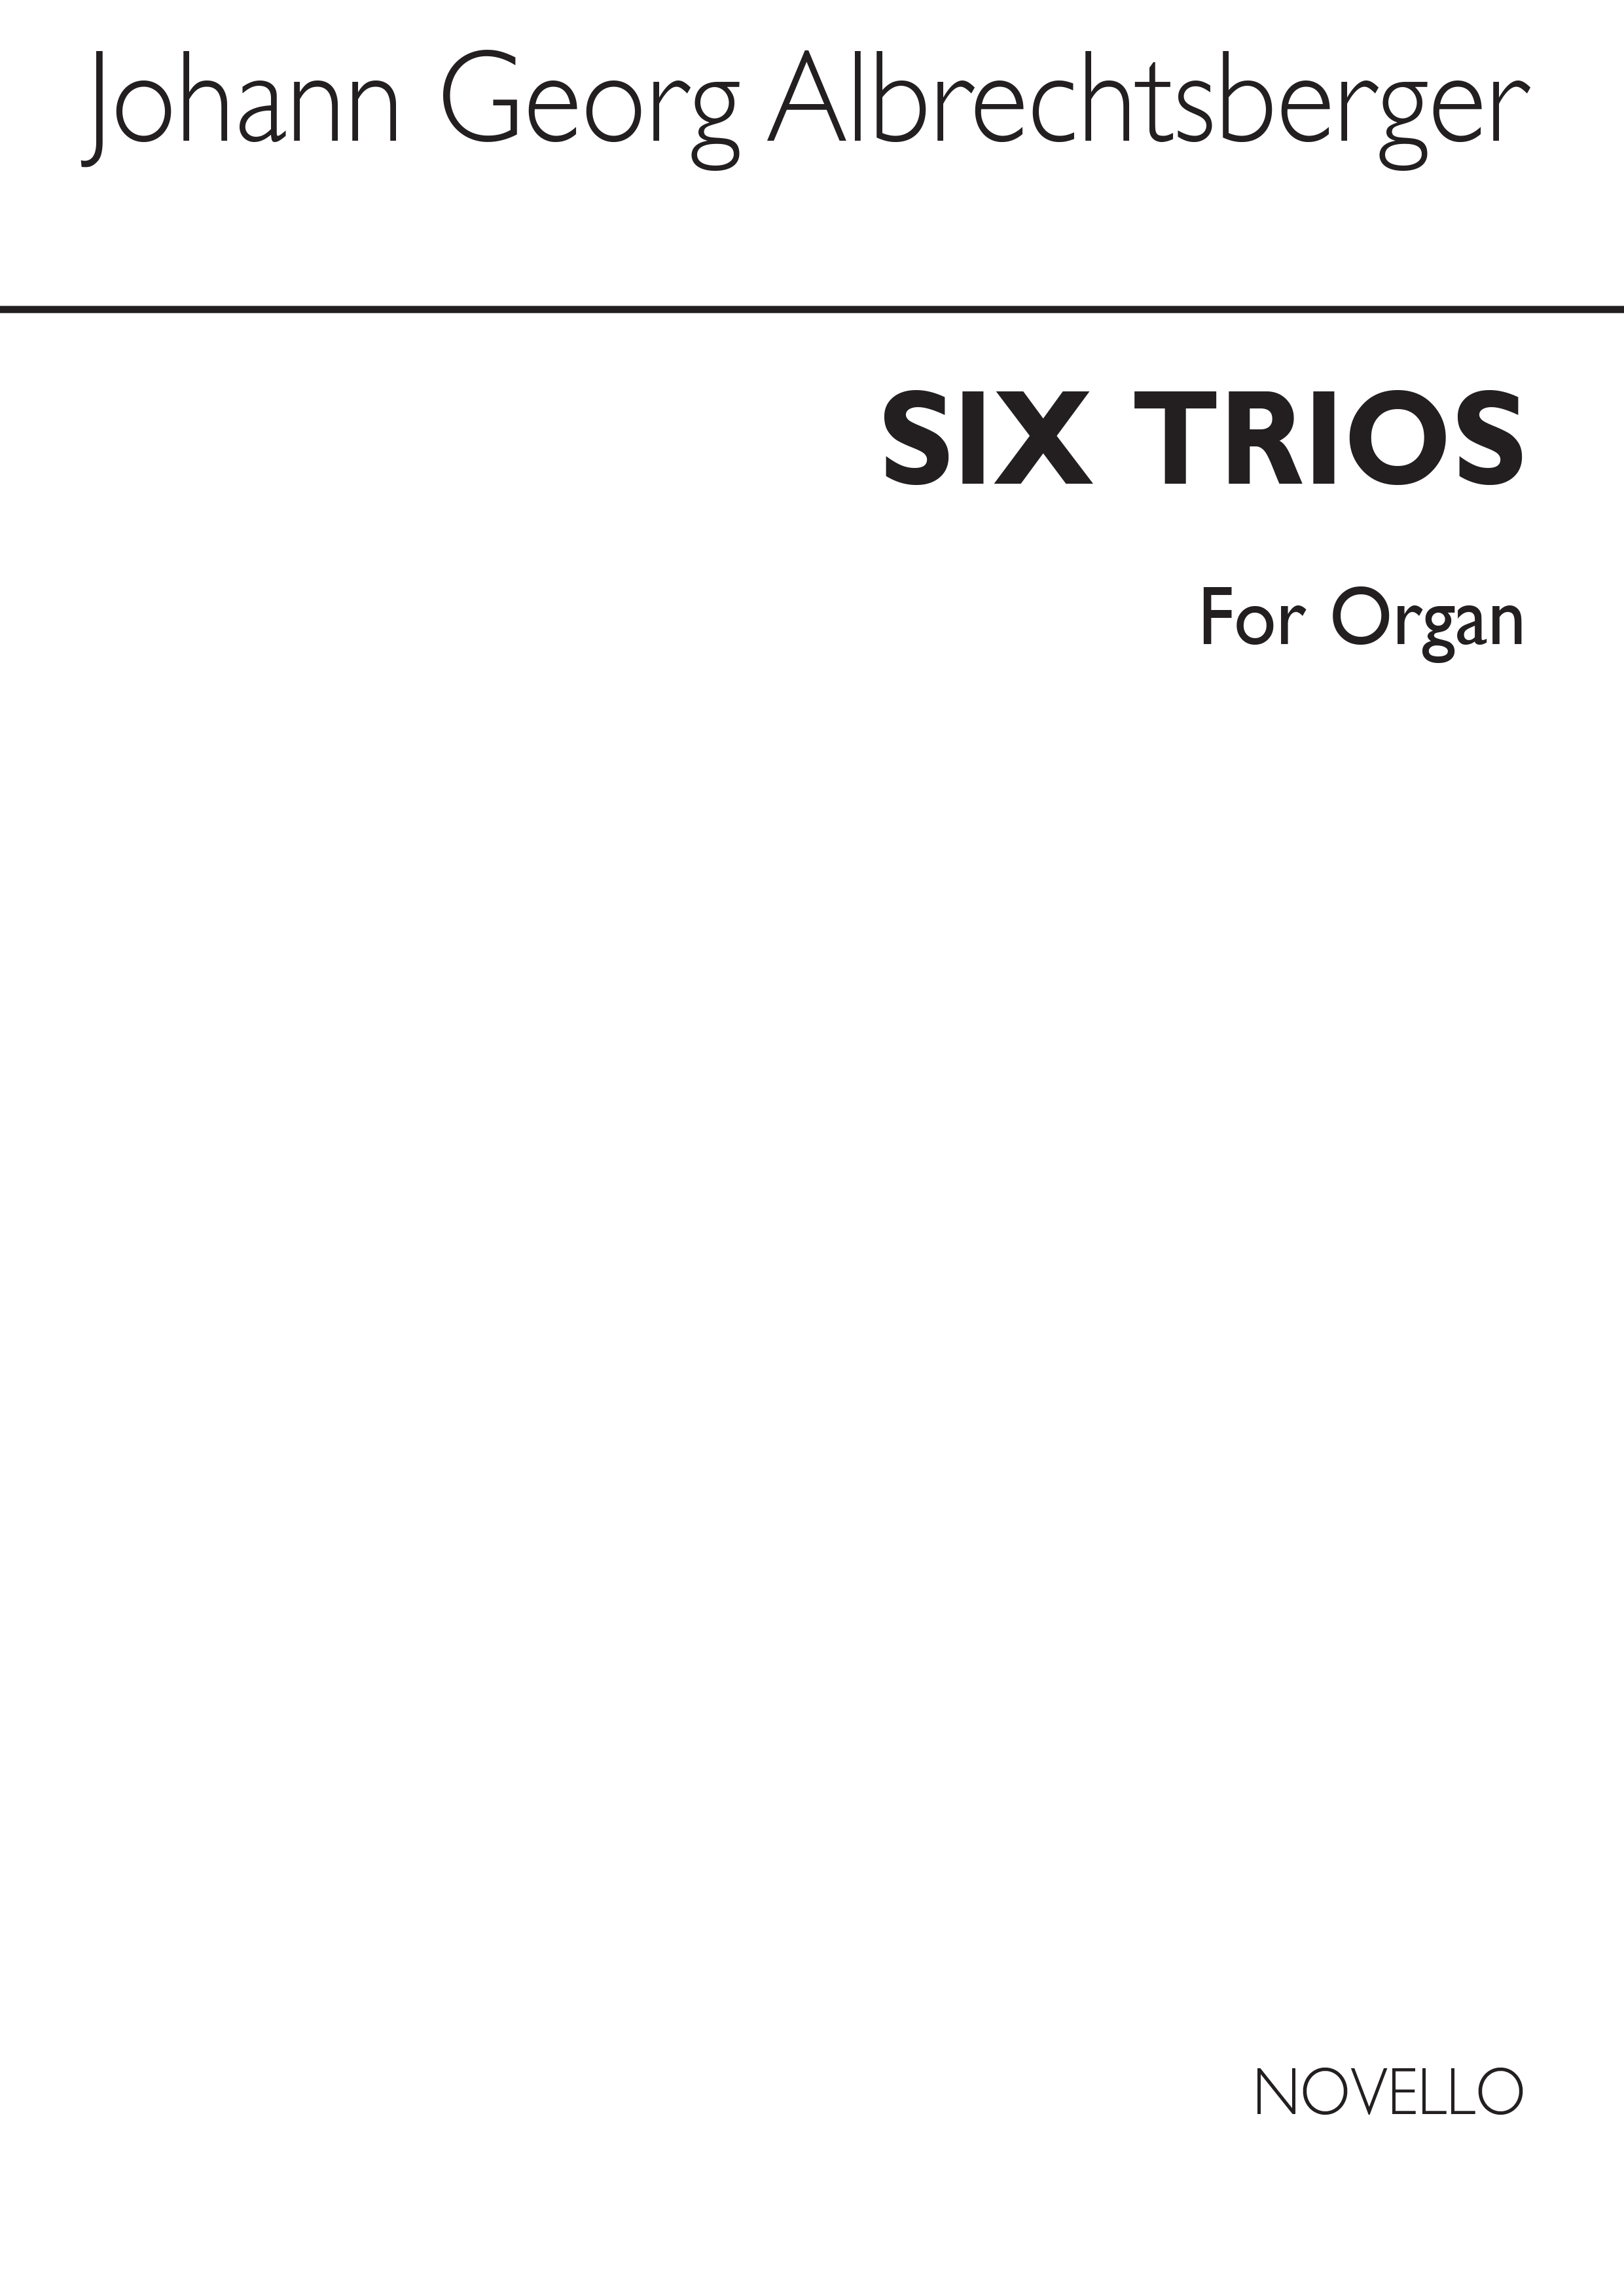 Johann Georg Albrechtsberger: Six Trios Organ